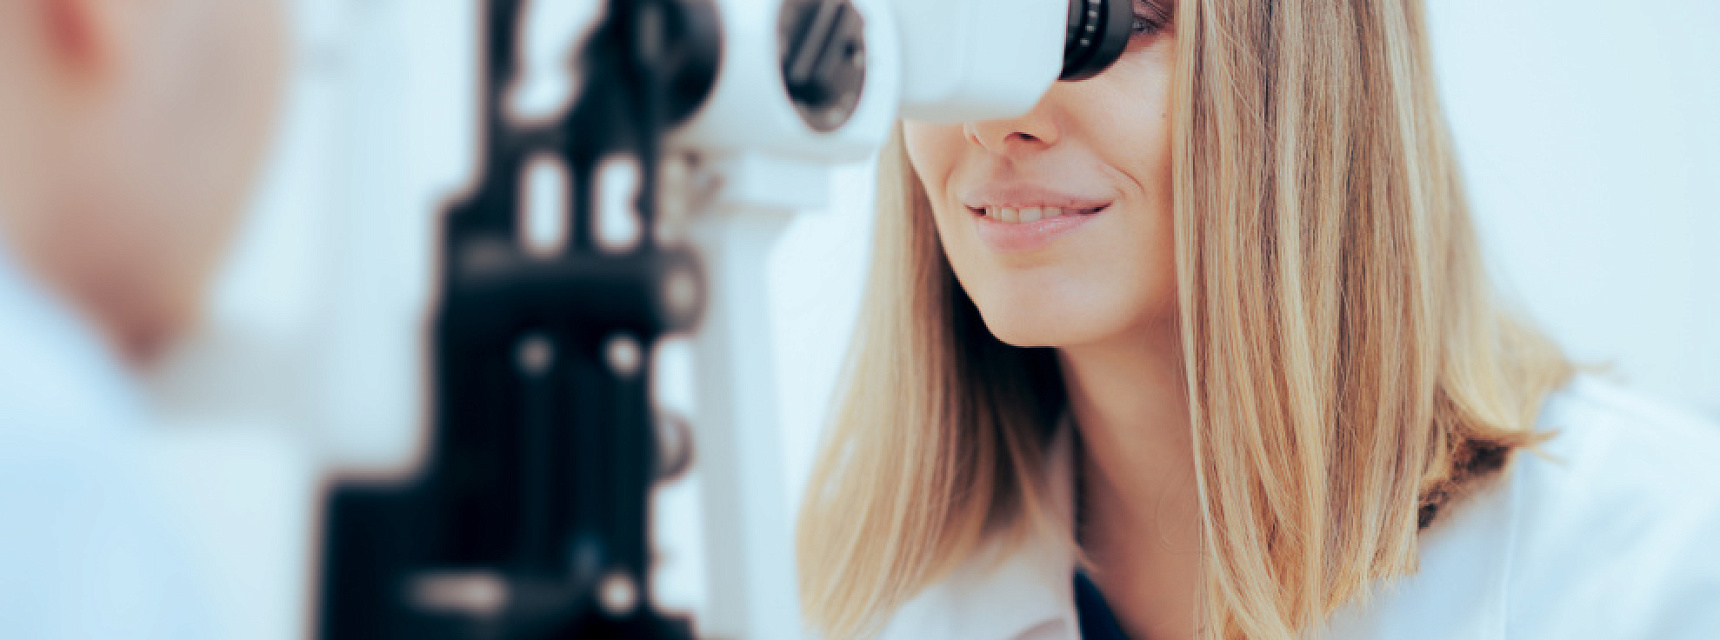 Можно ли делать лазерную коррекцию зрения при обнаружении других заболеваний глаз